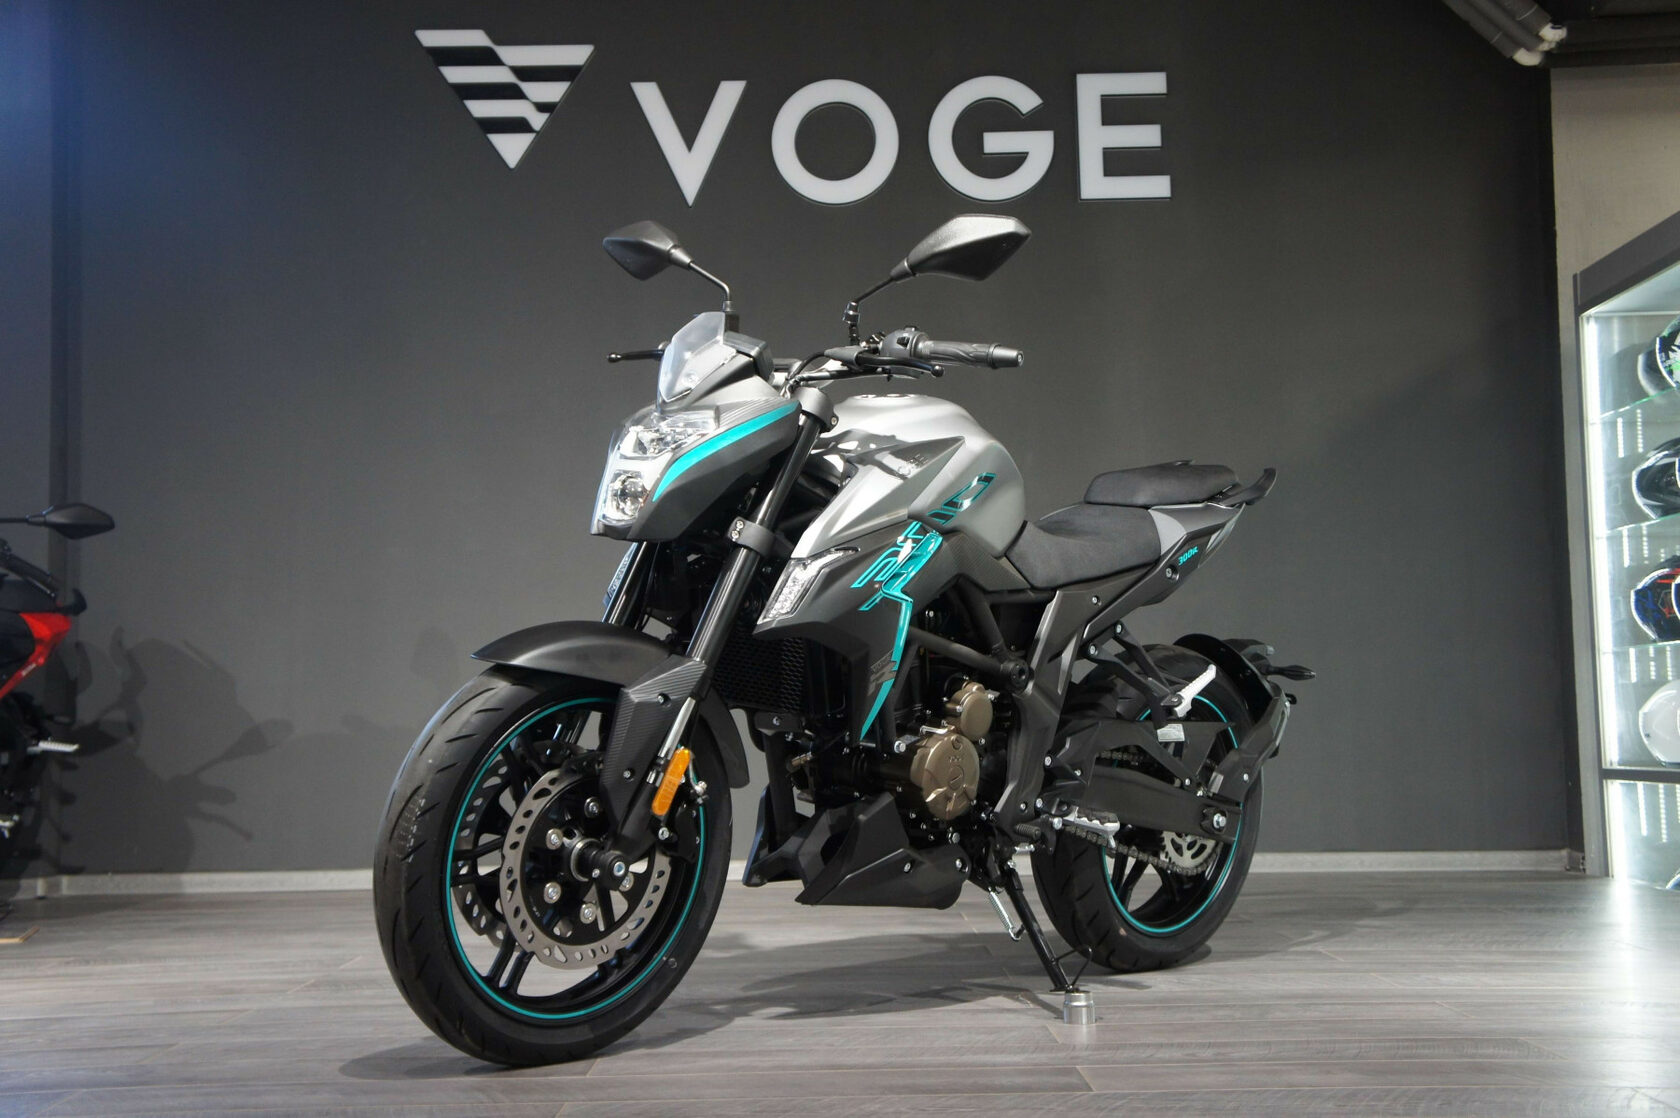 Voge adventure. Мотоцикл Вог 300. Мото voge 300r. Мотоцикл Loncin Vogue 300r. Vogue 300r.